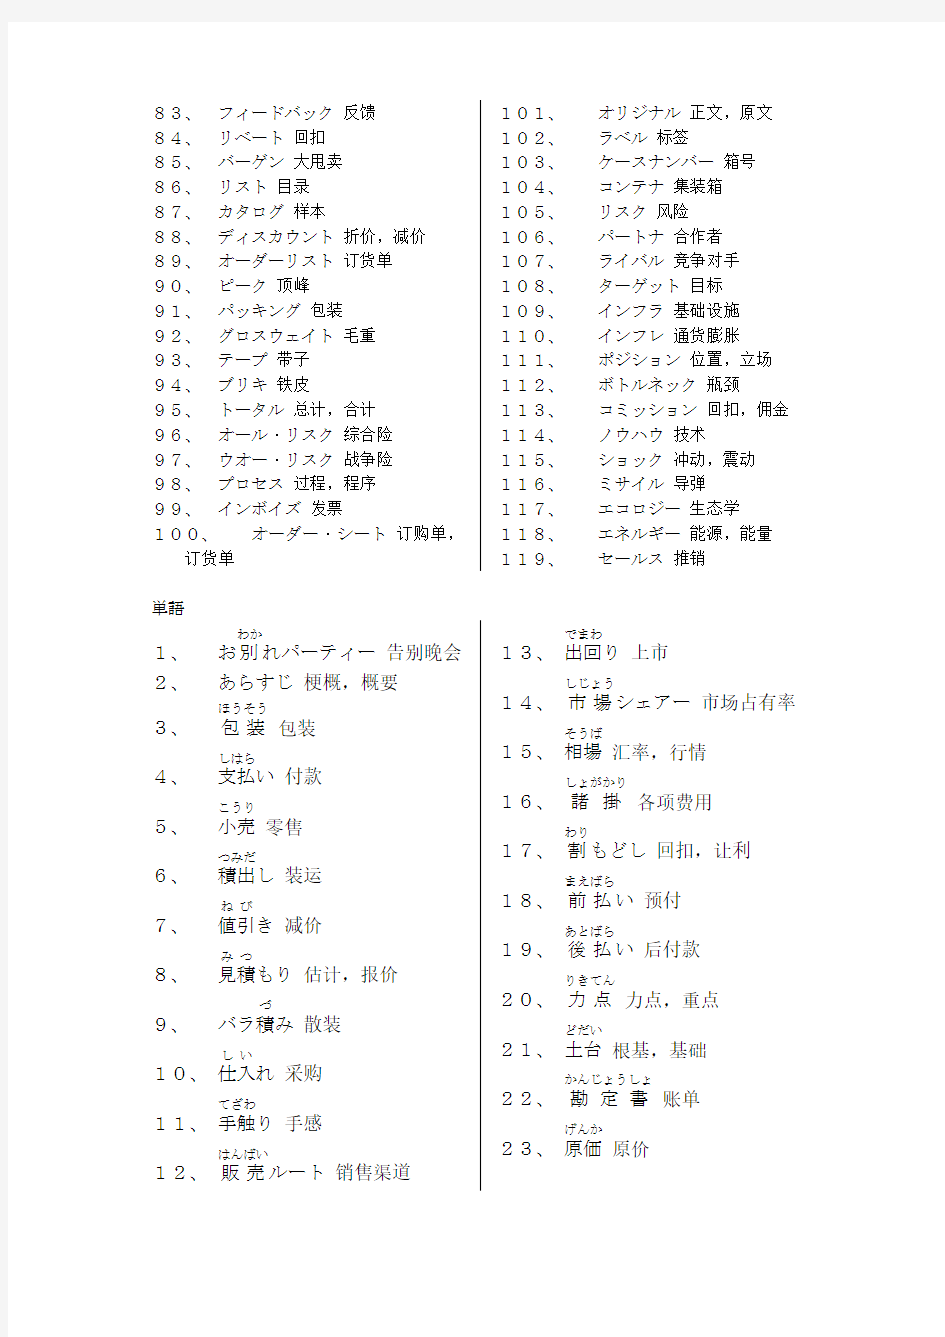 新版商务谈判日语+重要单词、句子整理